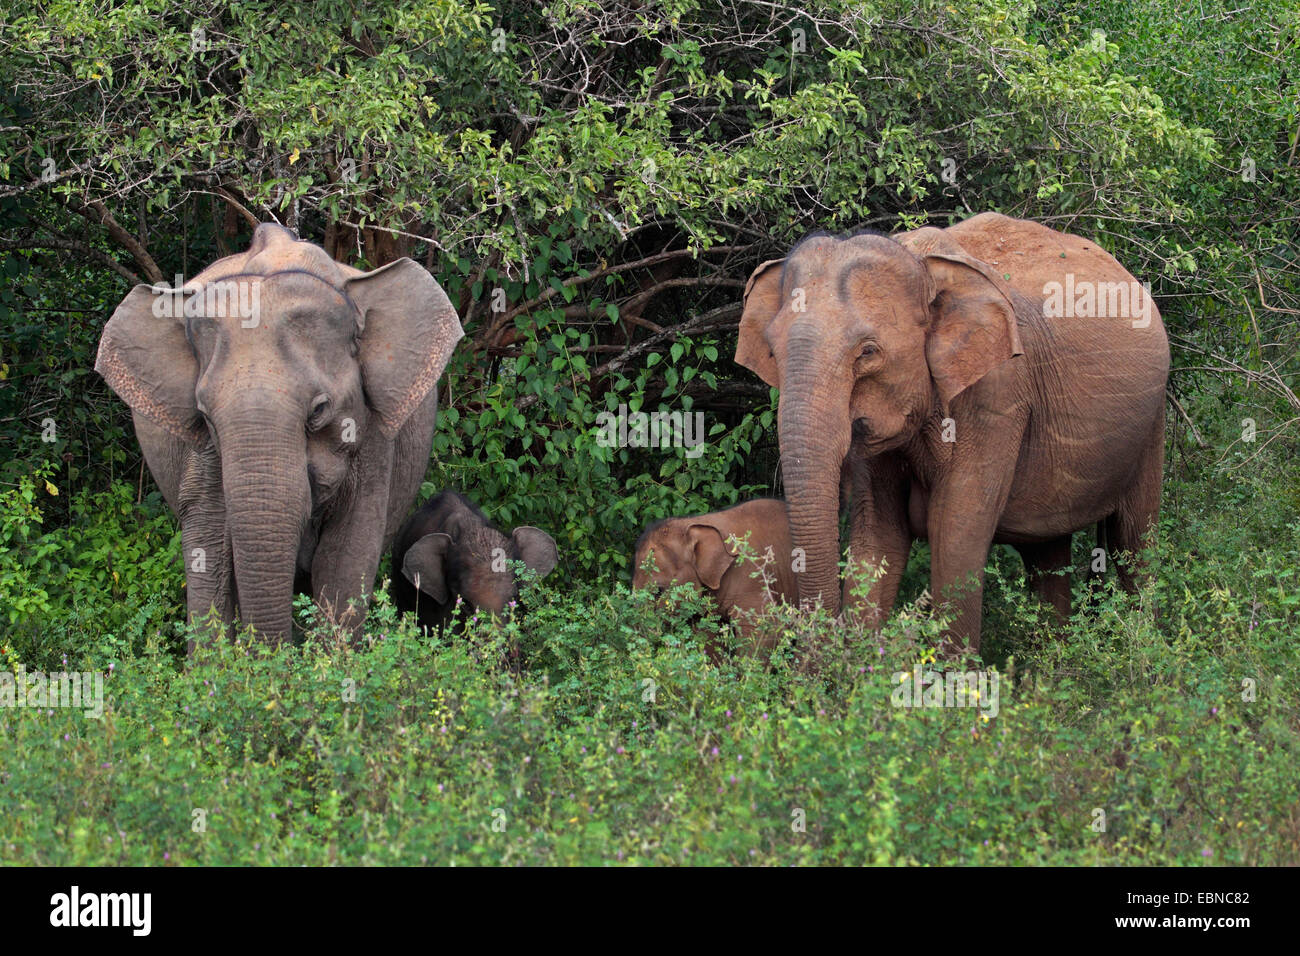 Sri Lanka Elephant, Asiatic elephant, Asian elephant (Elephas maximus, Elephas maximus maximus), two females with two elephant calves, Sri Lanka, Yala National Park Stock Photo